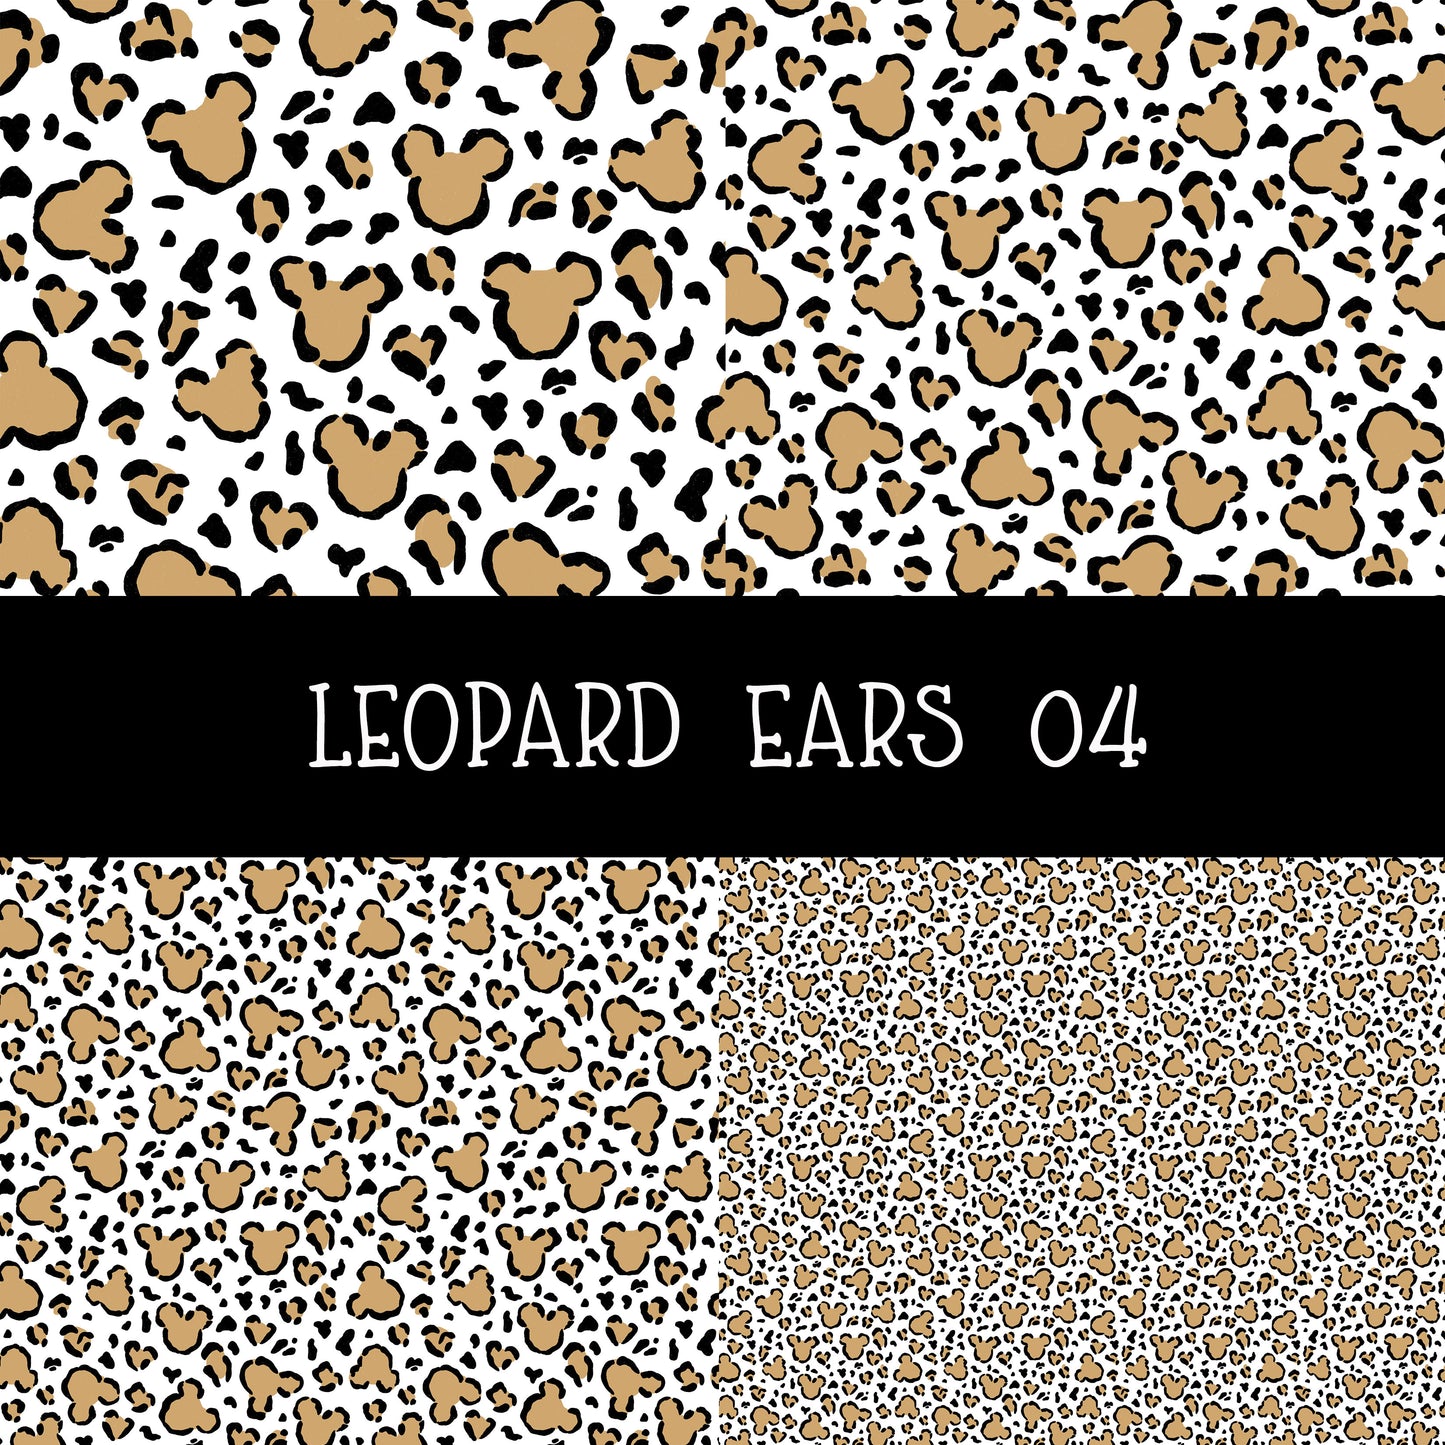 Leopard Ears 04